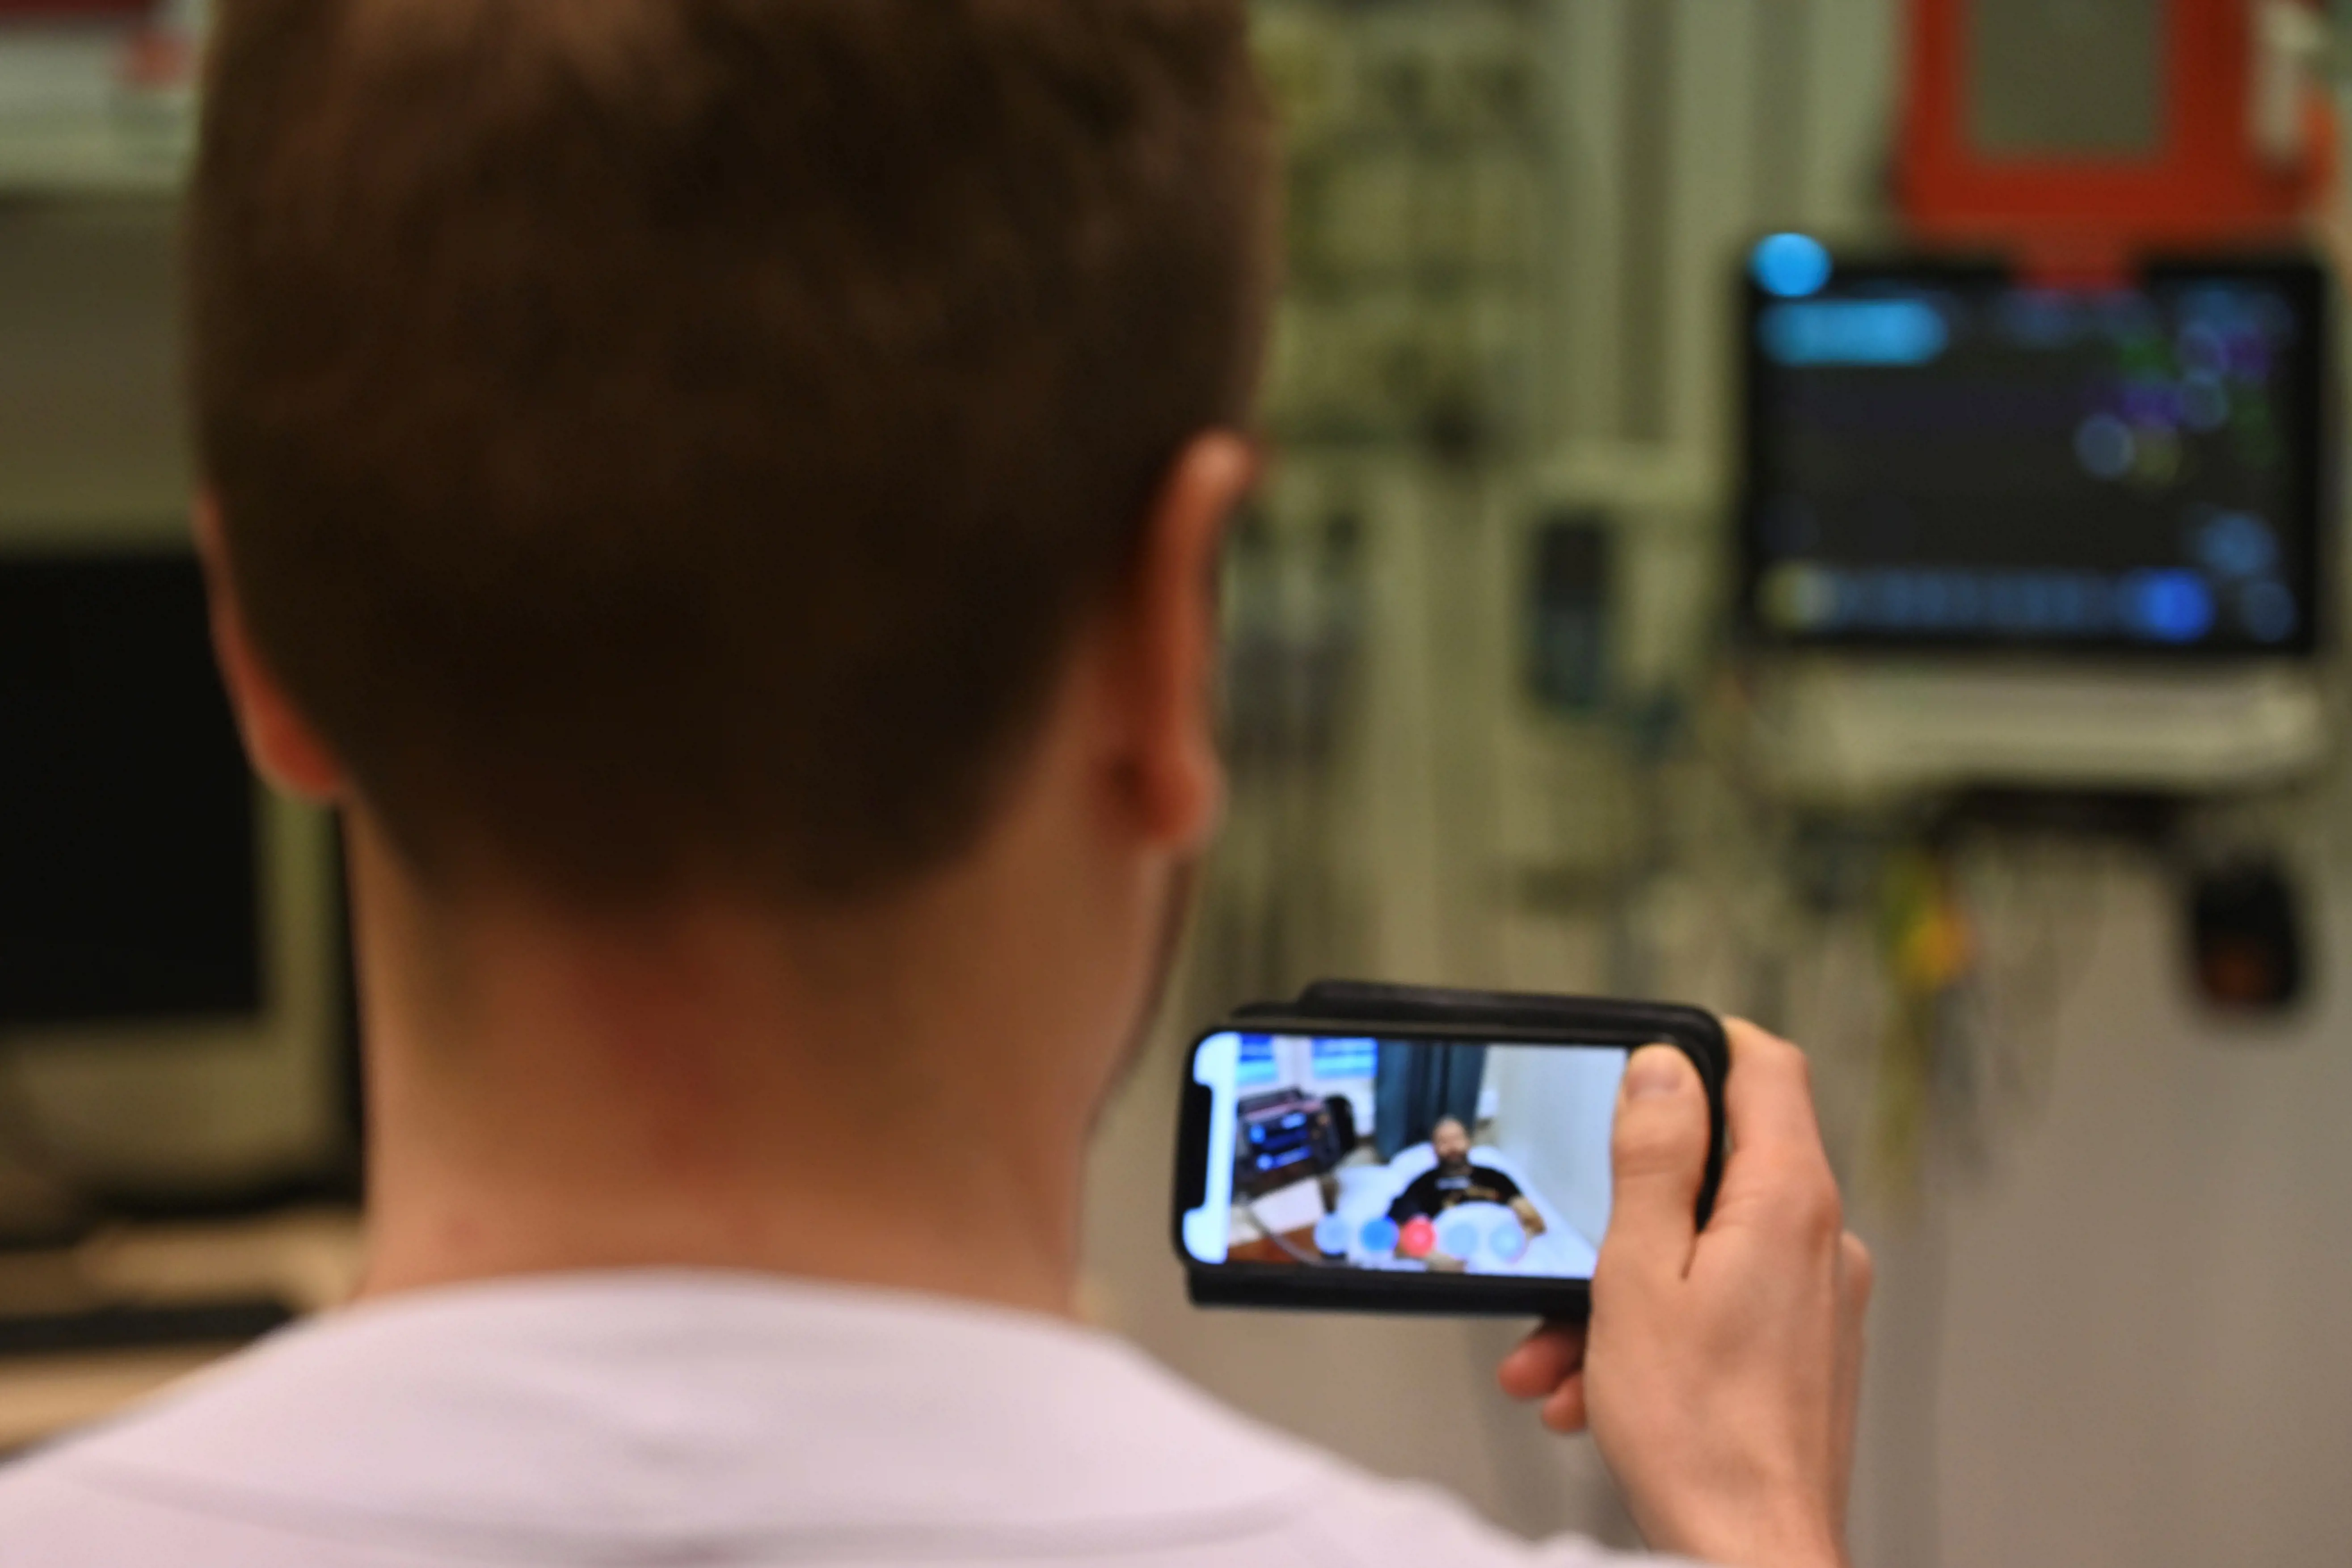 Lege observerer pasient via hodekamera med videooverføring.